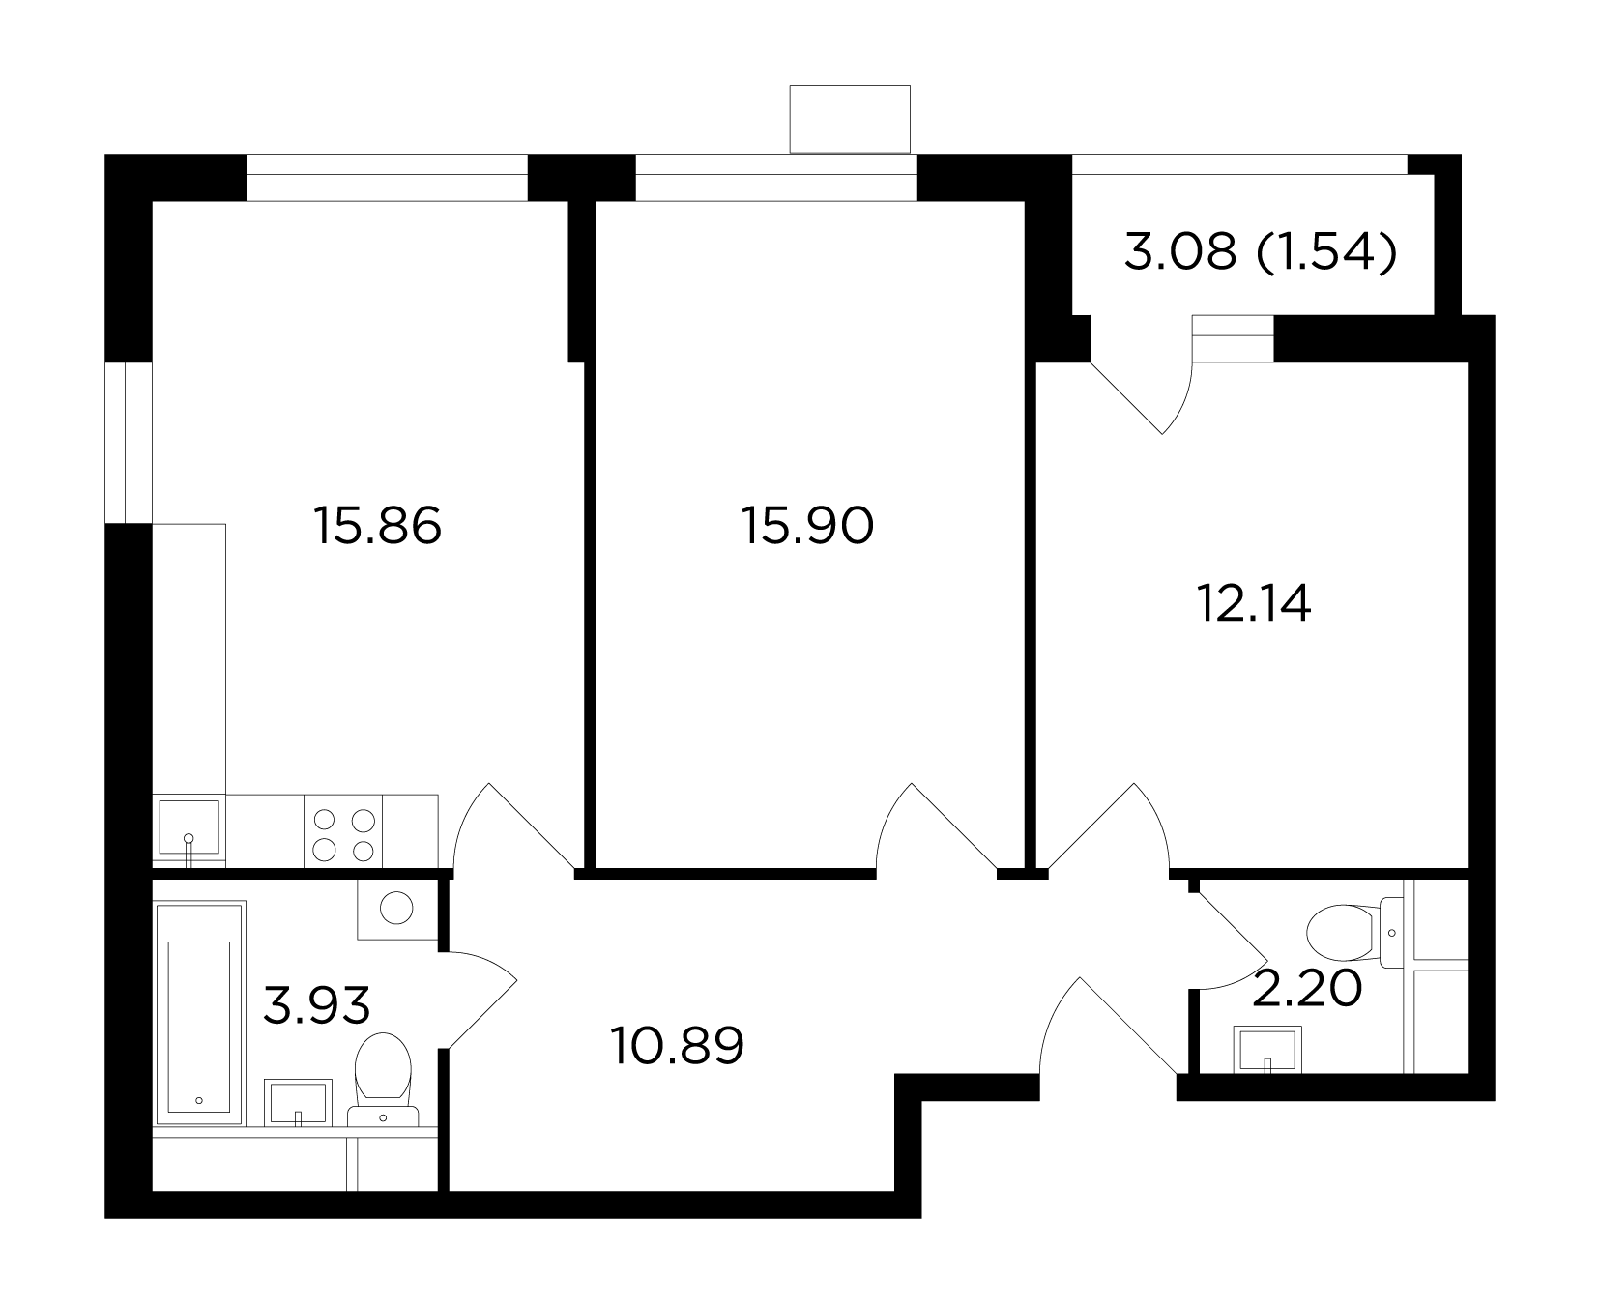 Продаётся 2-комнатная квартира в новостройке 62.5 кв.м. этаж 5/8 за 8 117 285 руб 